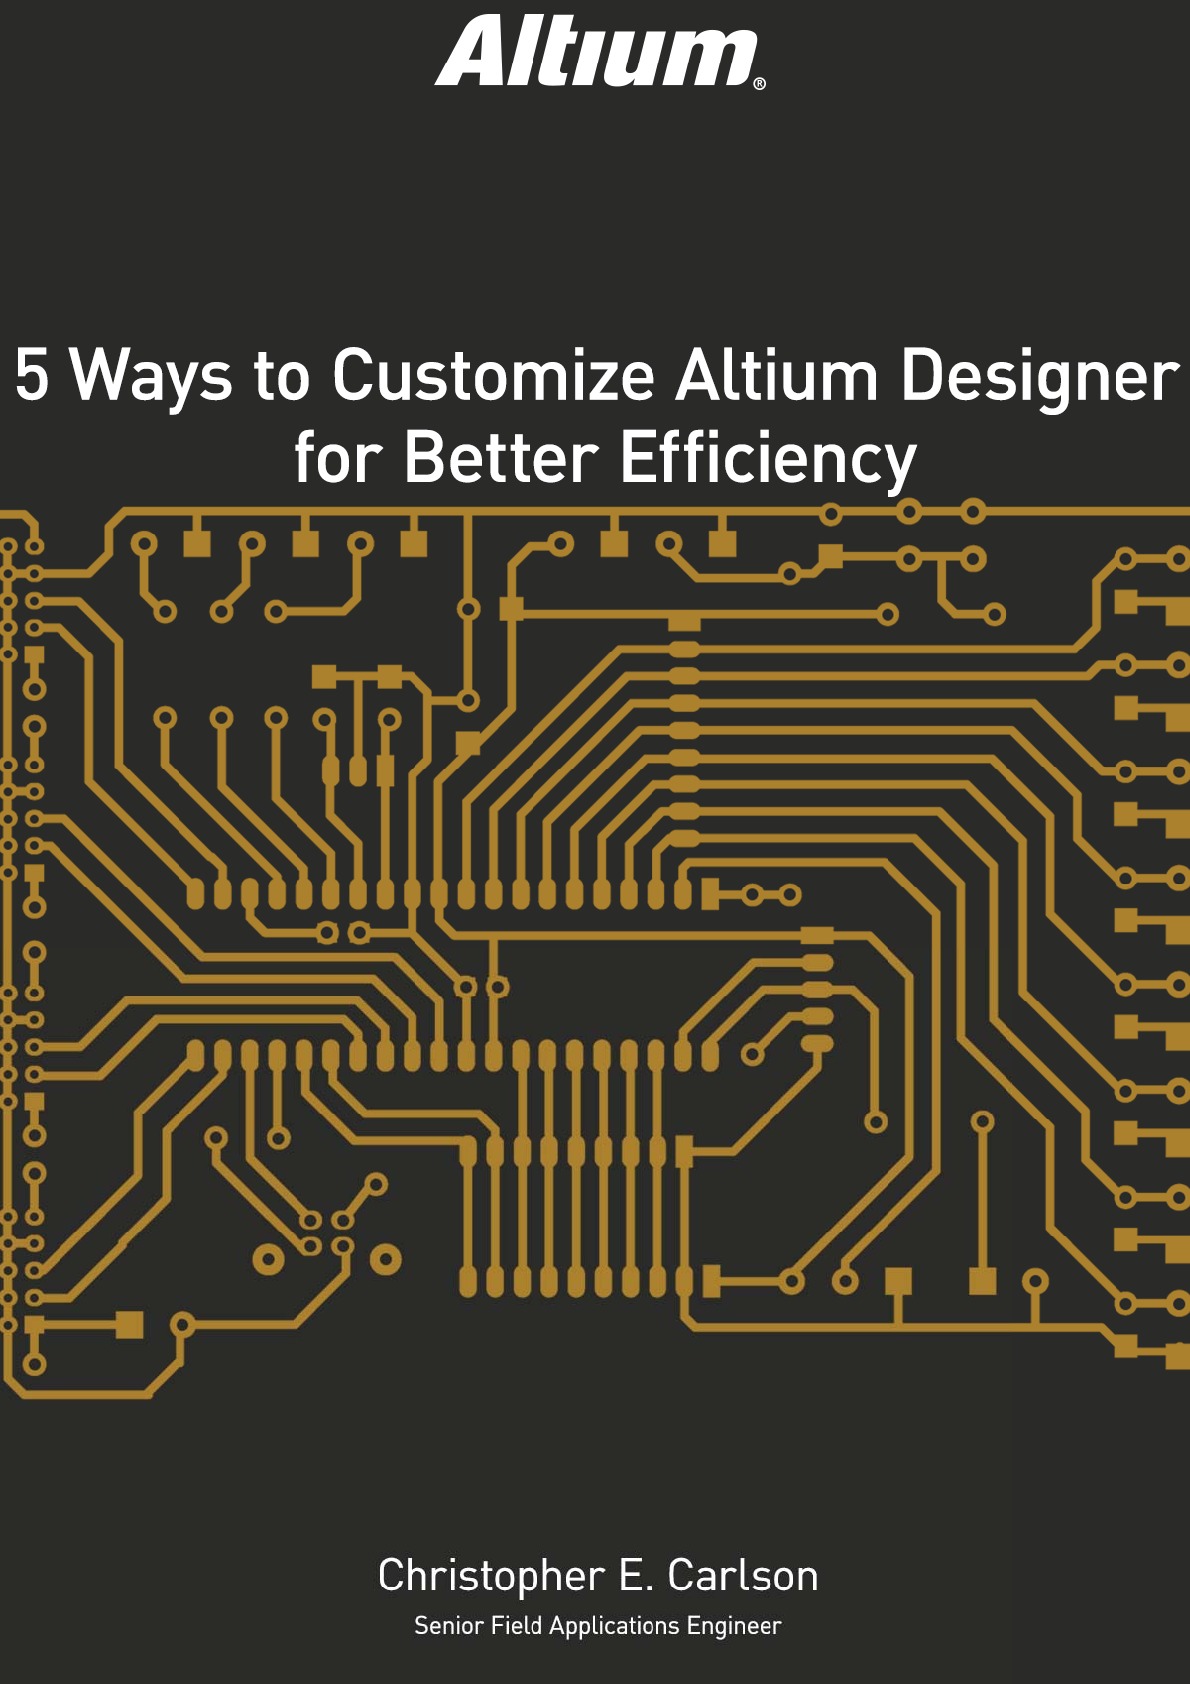 altium designer 16 icon file